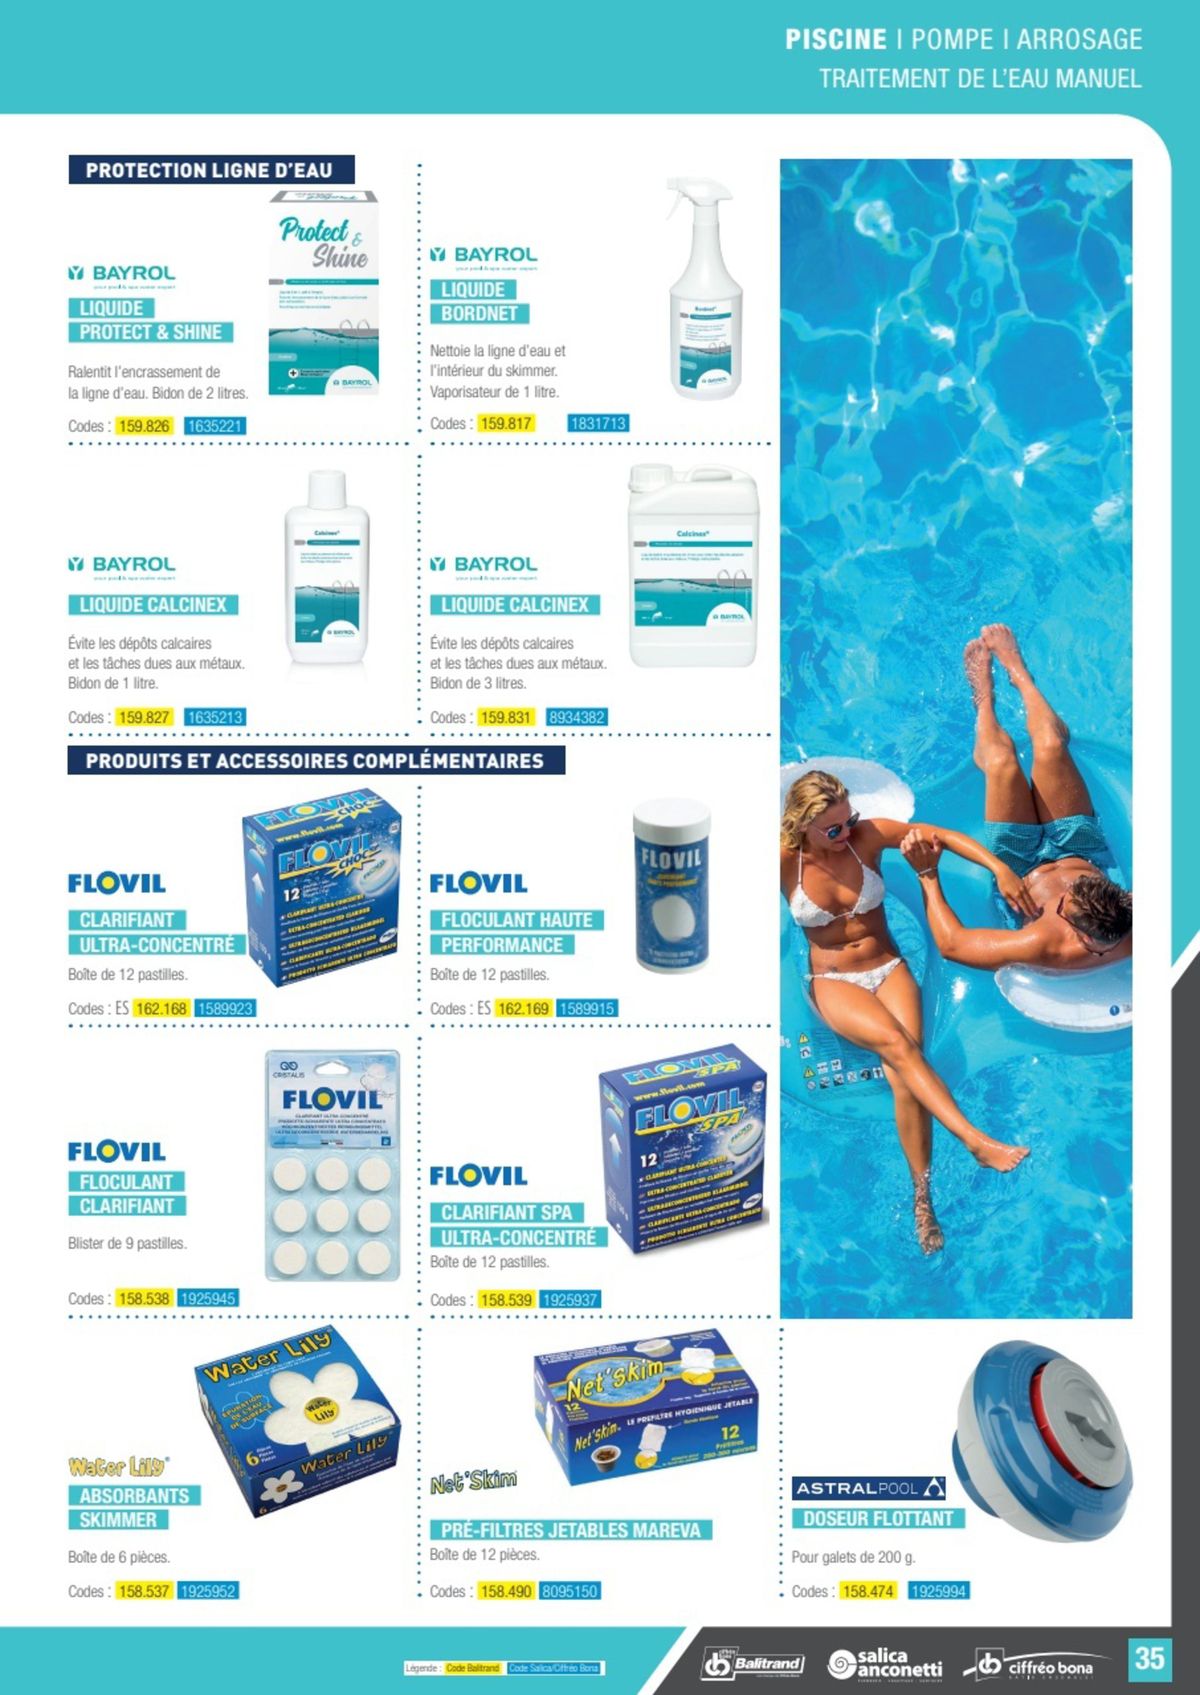 Catalogue Le guide piscine pompe & arrosage, page 00028